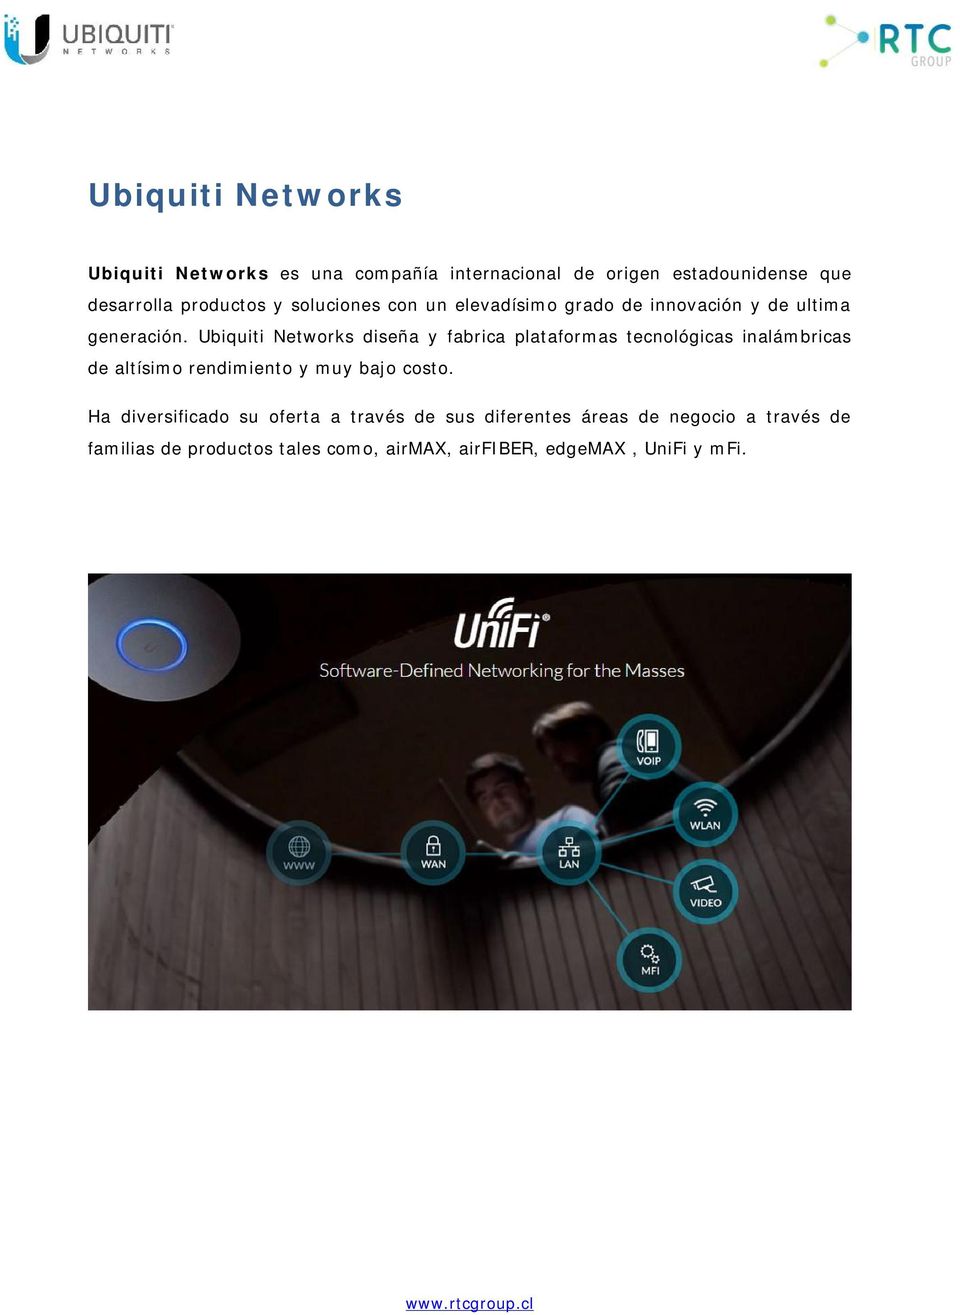 Ubiquiti Networks diseña y fabrica plataformas tecnológicas inalámbricas de altísimo rendimiento y muy bajo costo.